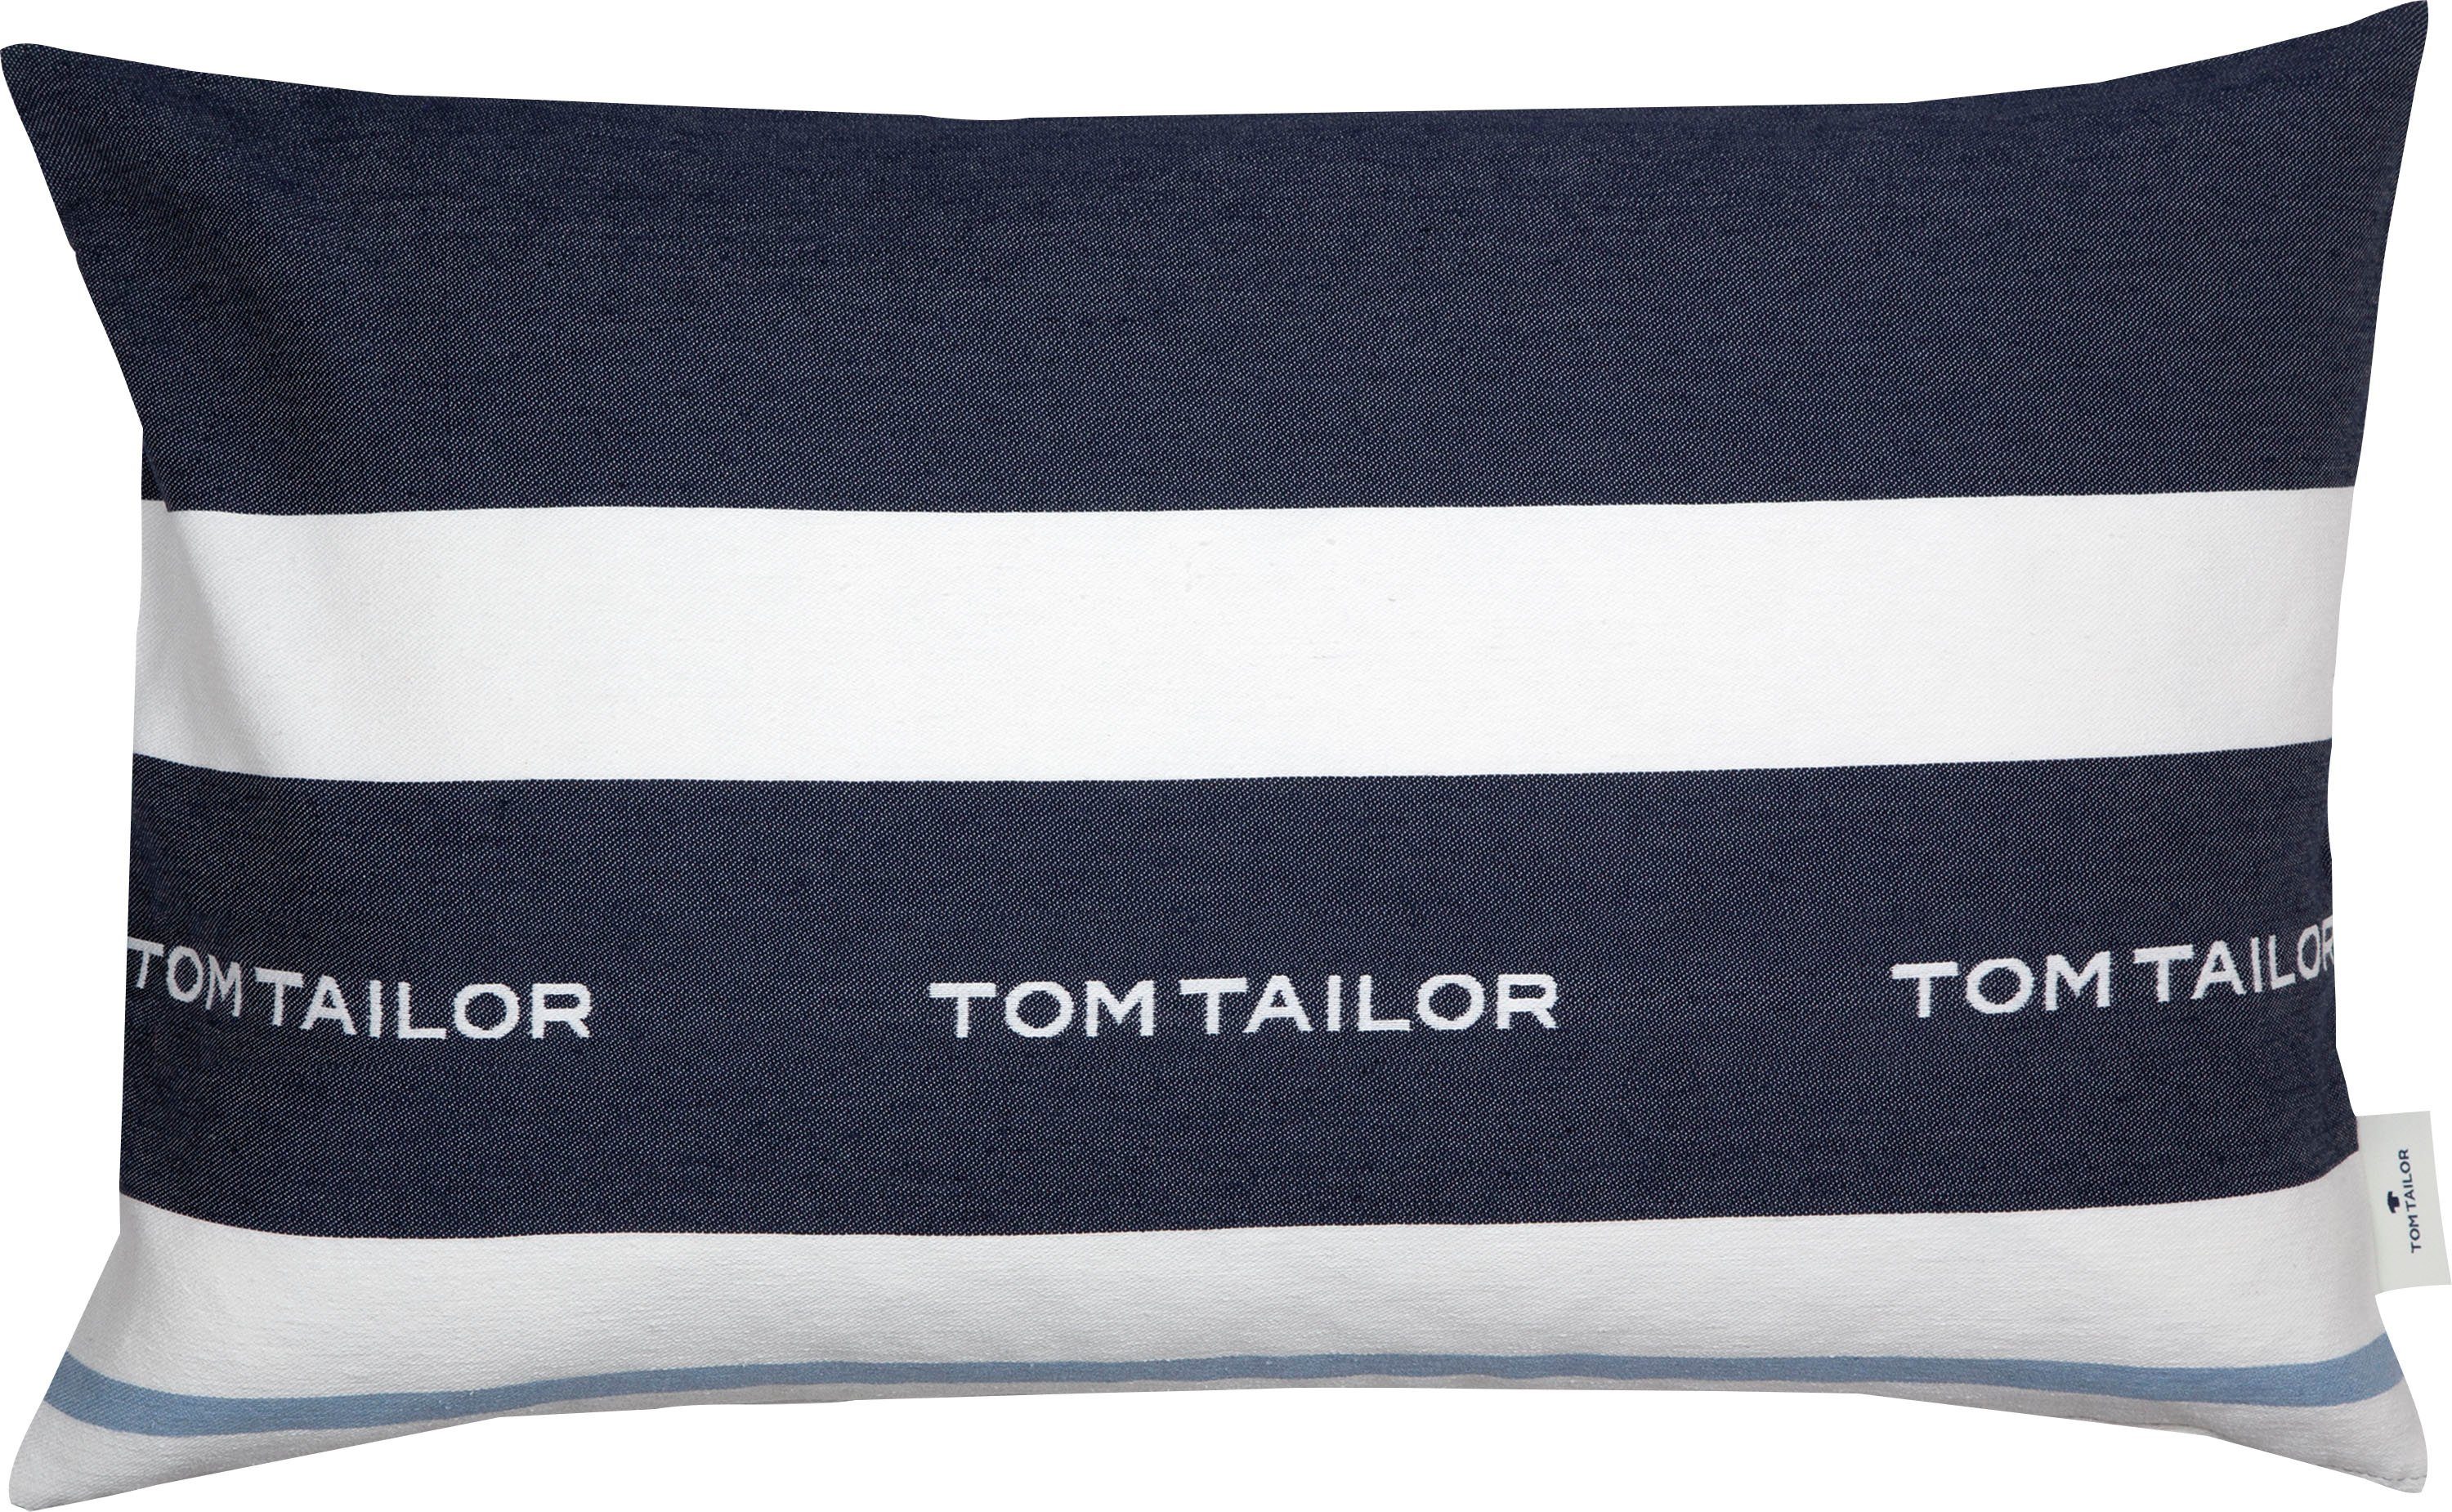 TOM TAILOR HOME Dekokissen Logo, mit eingewebtem Markenlogo, Kissenhülle ohne Füllung, 1 Stück marine